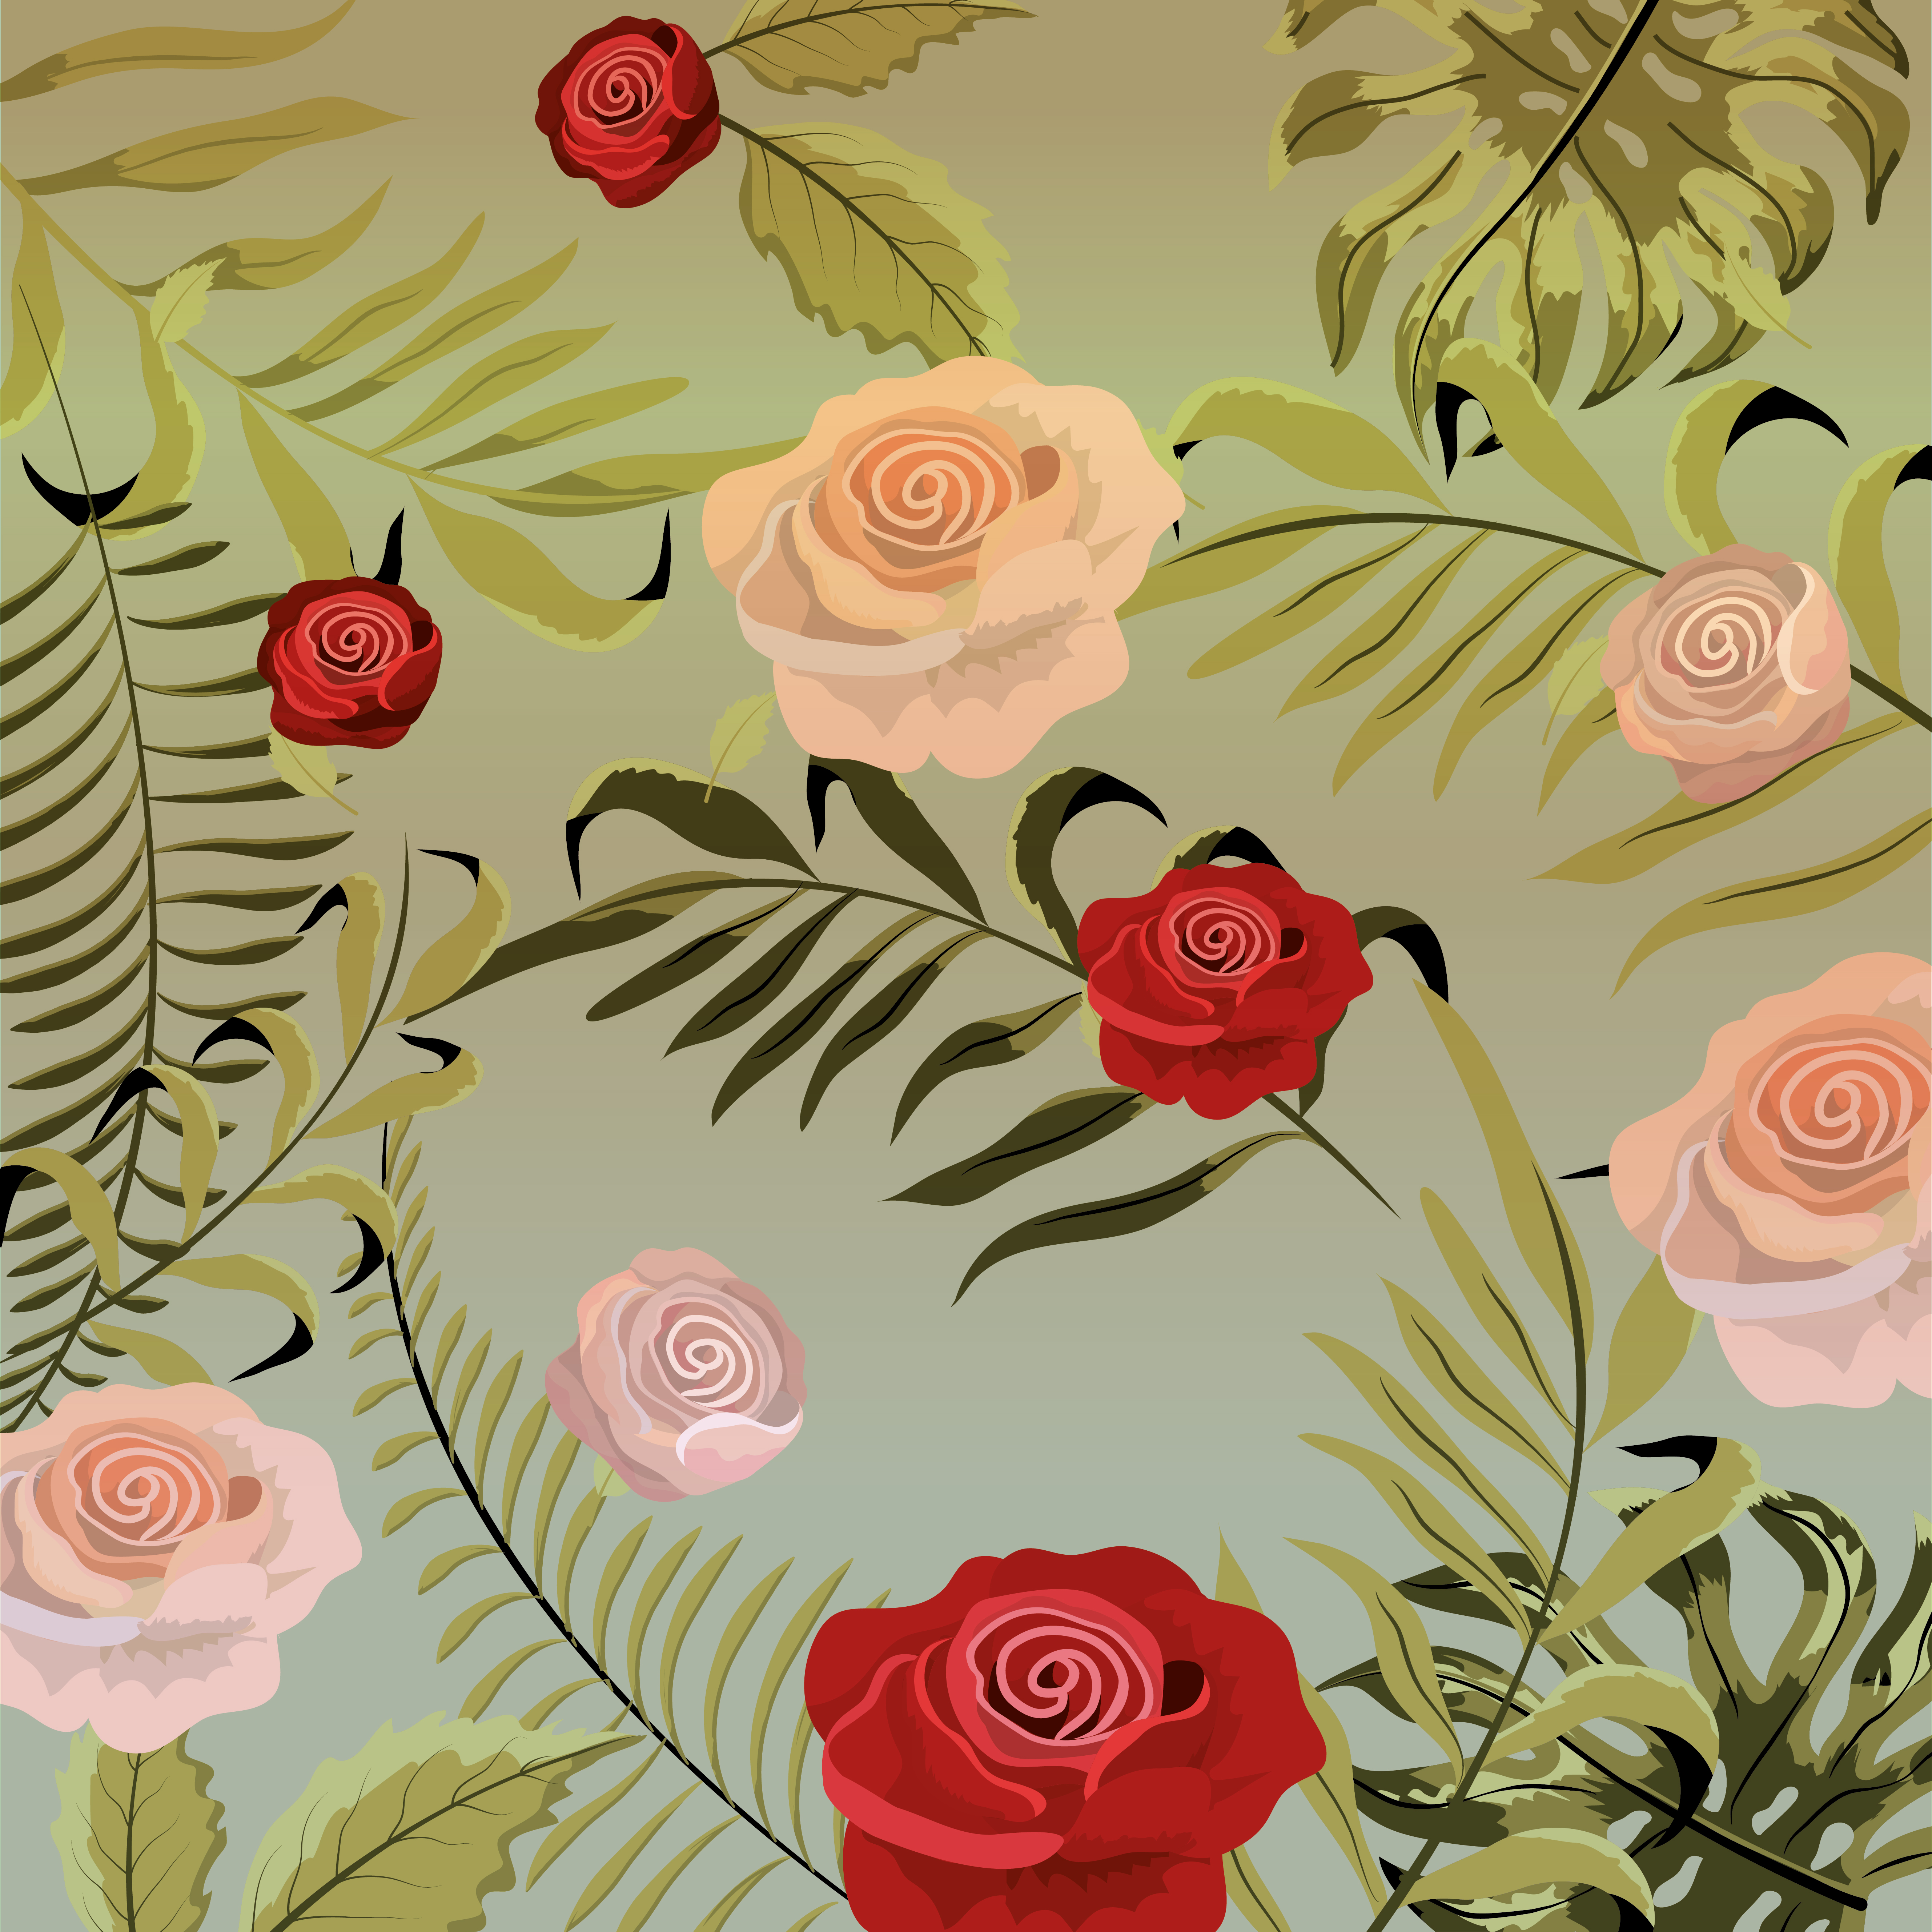 Vintage Floral Background - Garden Roses - HD Wallpaper 